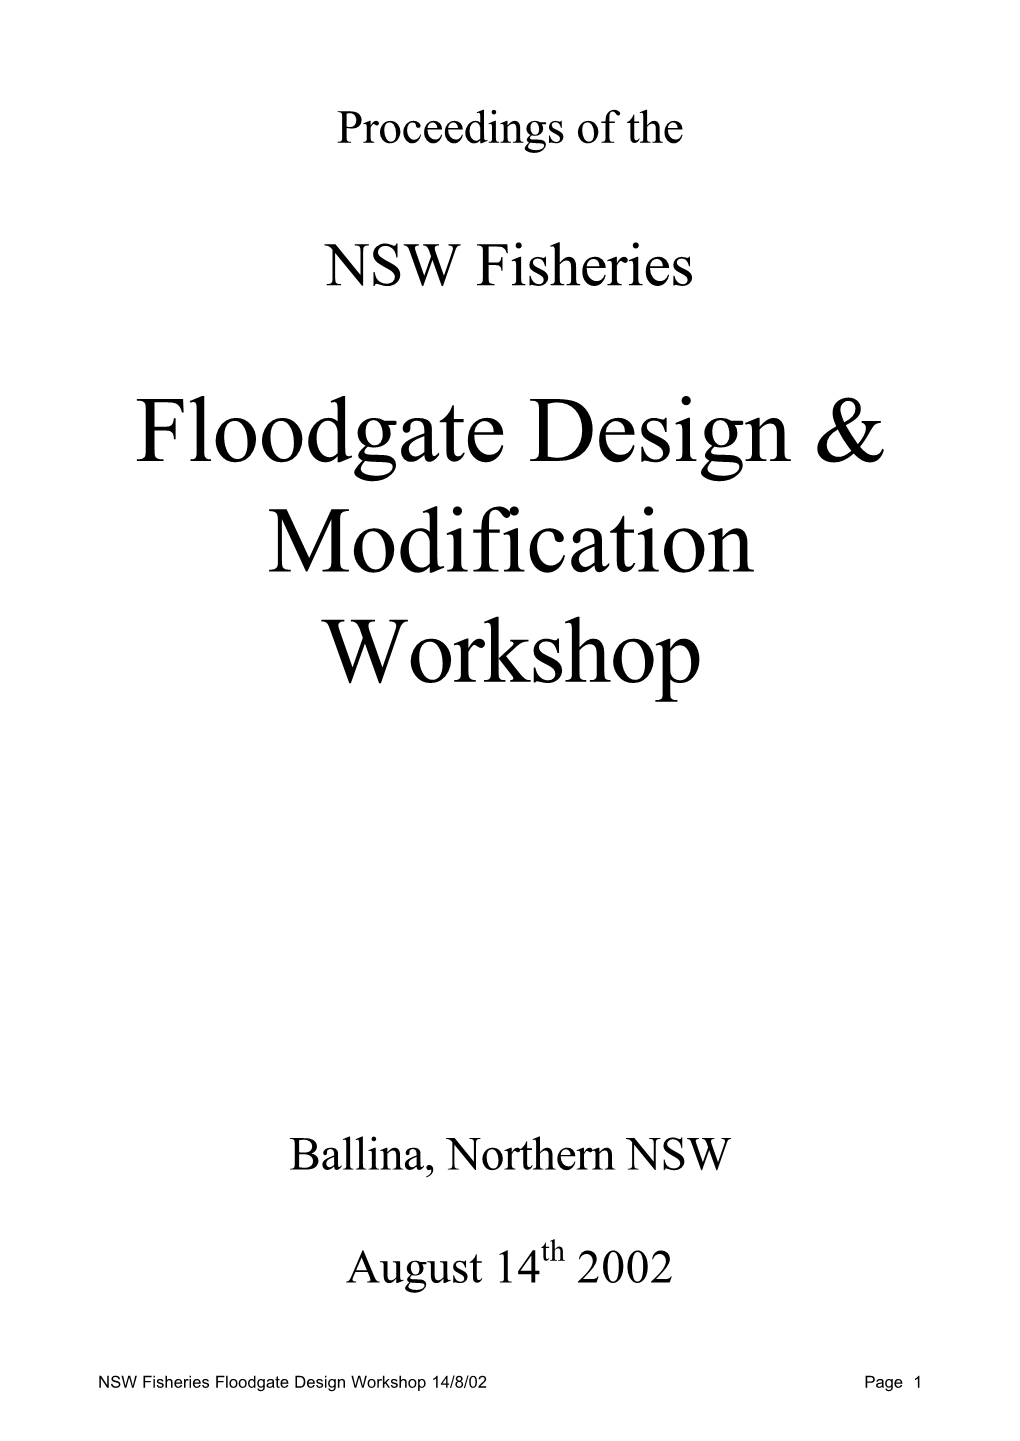 Floodgate Design & Modification Workshop